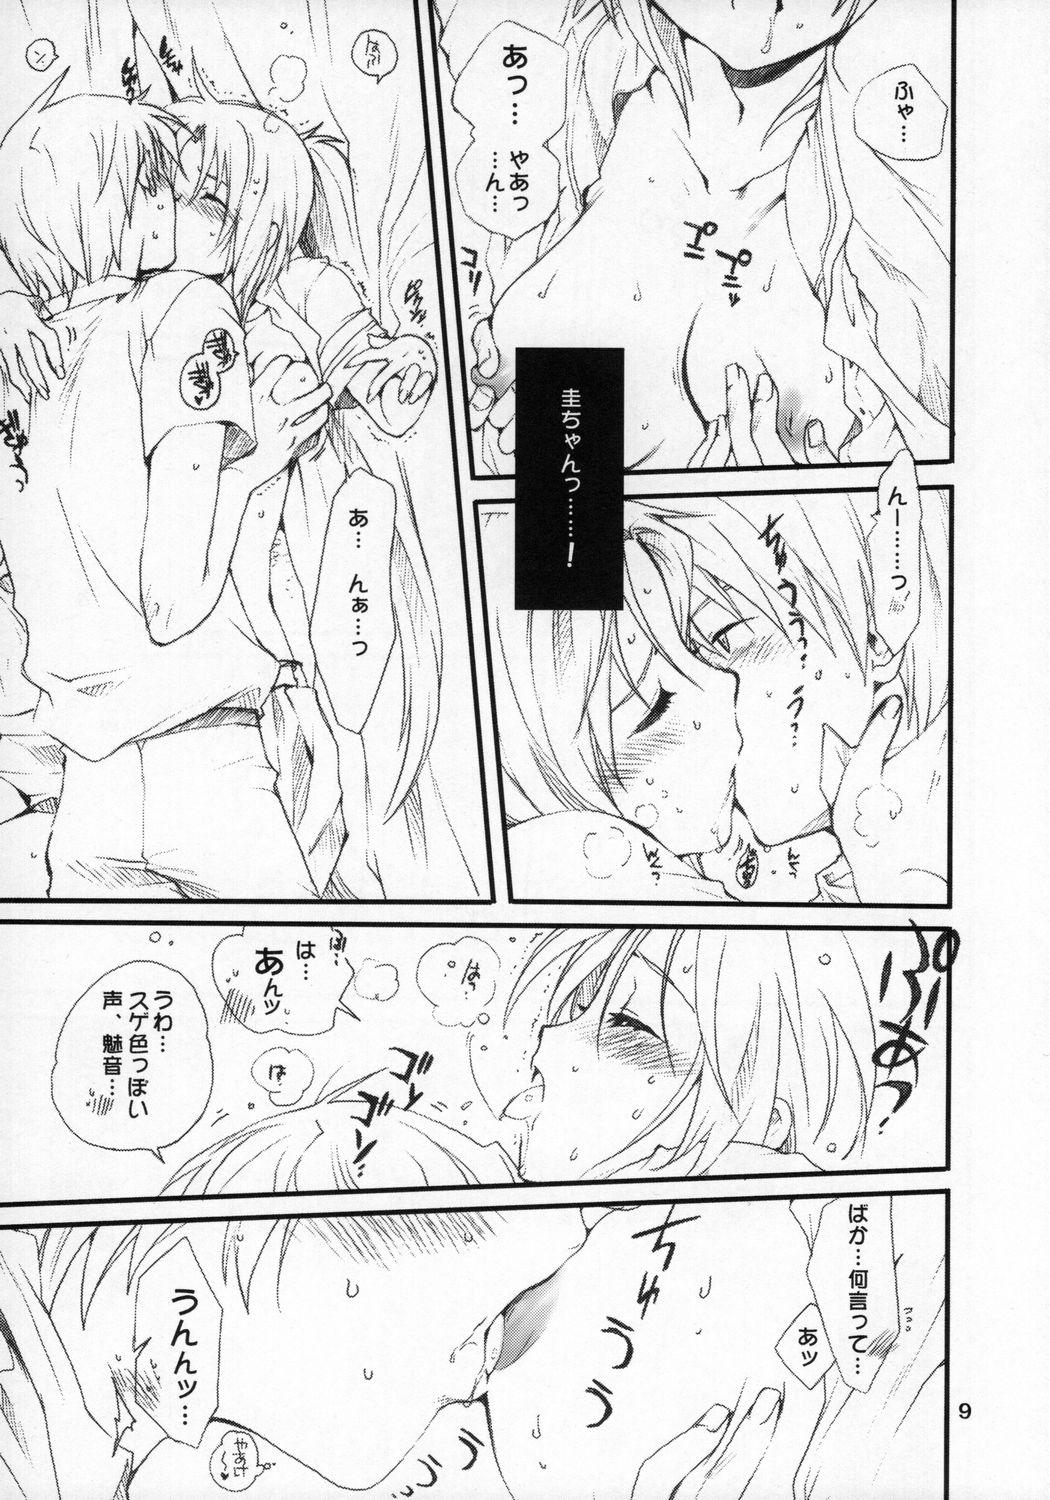 Maledom Mion-san Ganbaru! - Higurashi no naku koro ni Art - Page 8